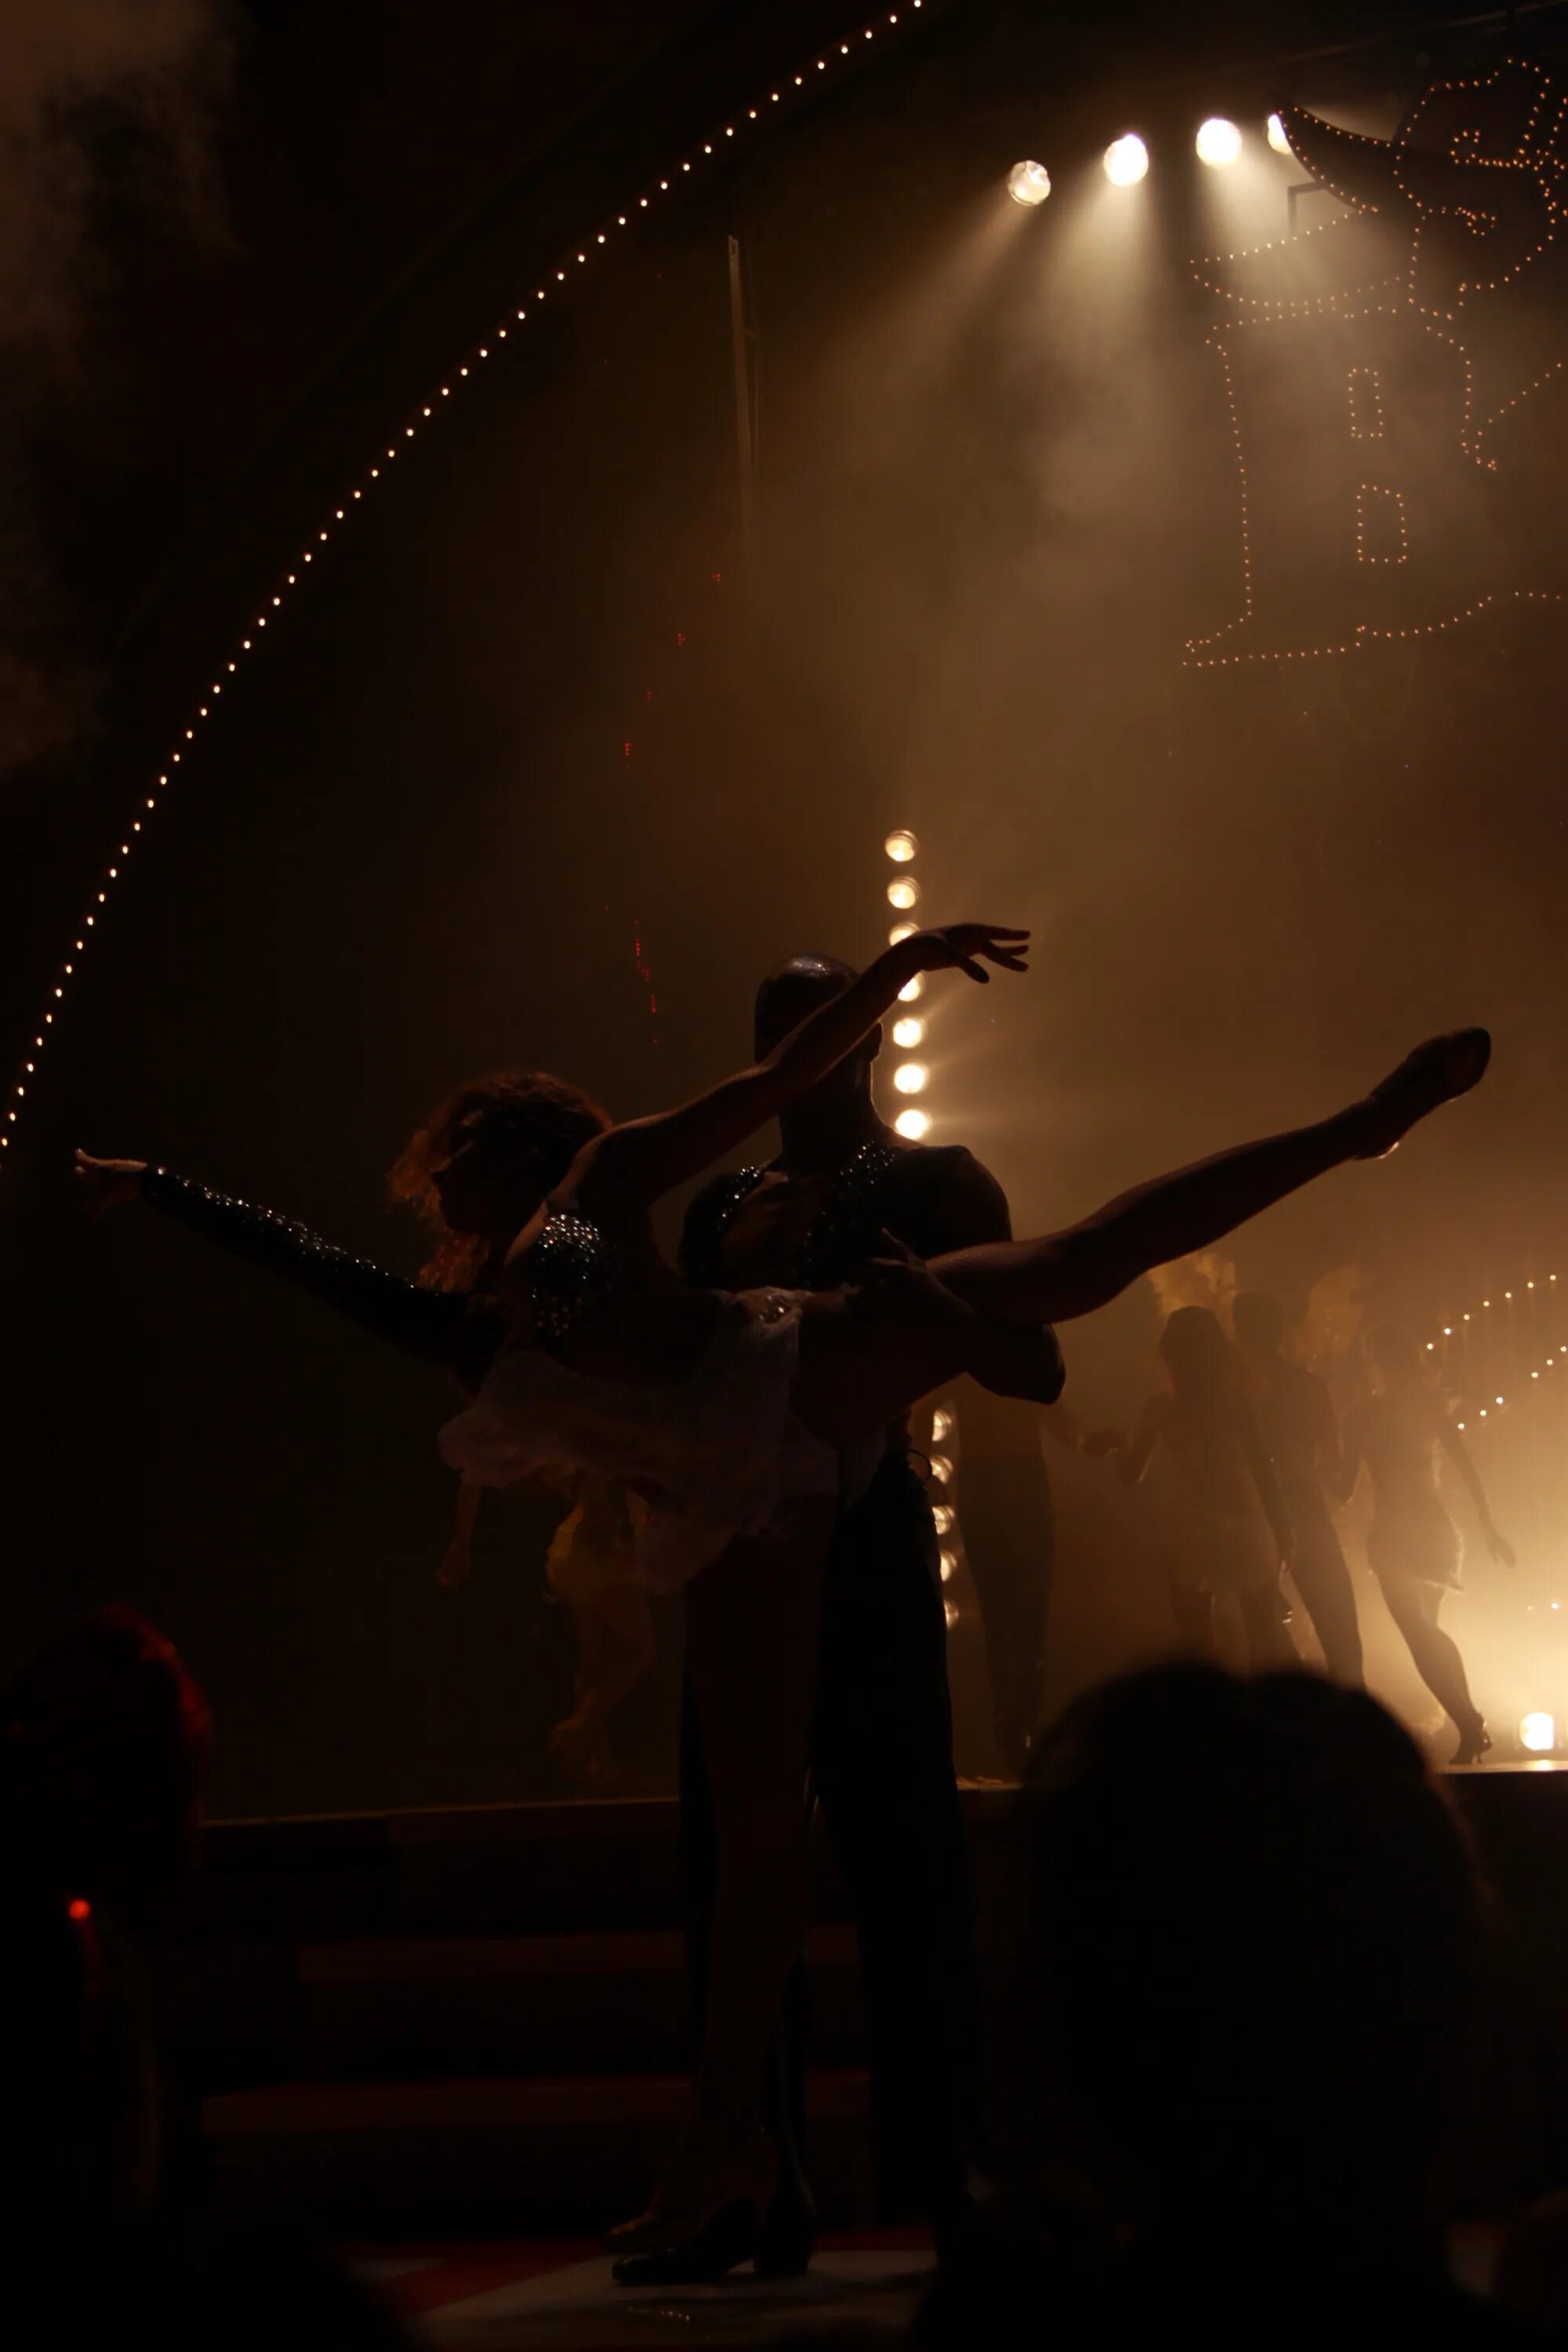 Показалось в темноте. Ночные танцы. Танцы в темноте. Девушка танцует на сцене. Пара танцует на сцене.